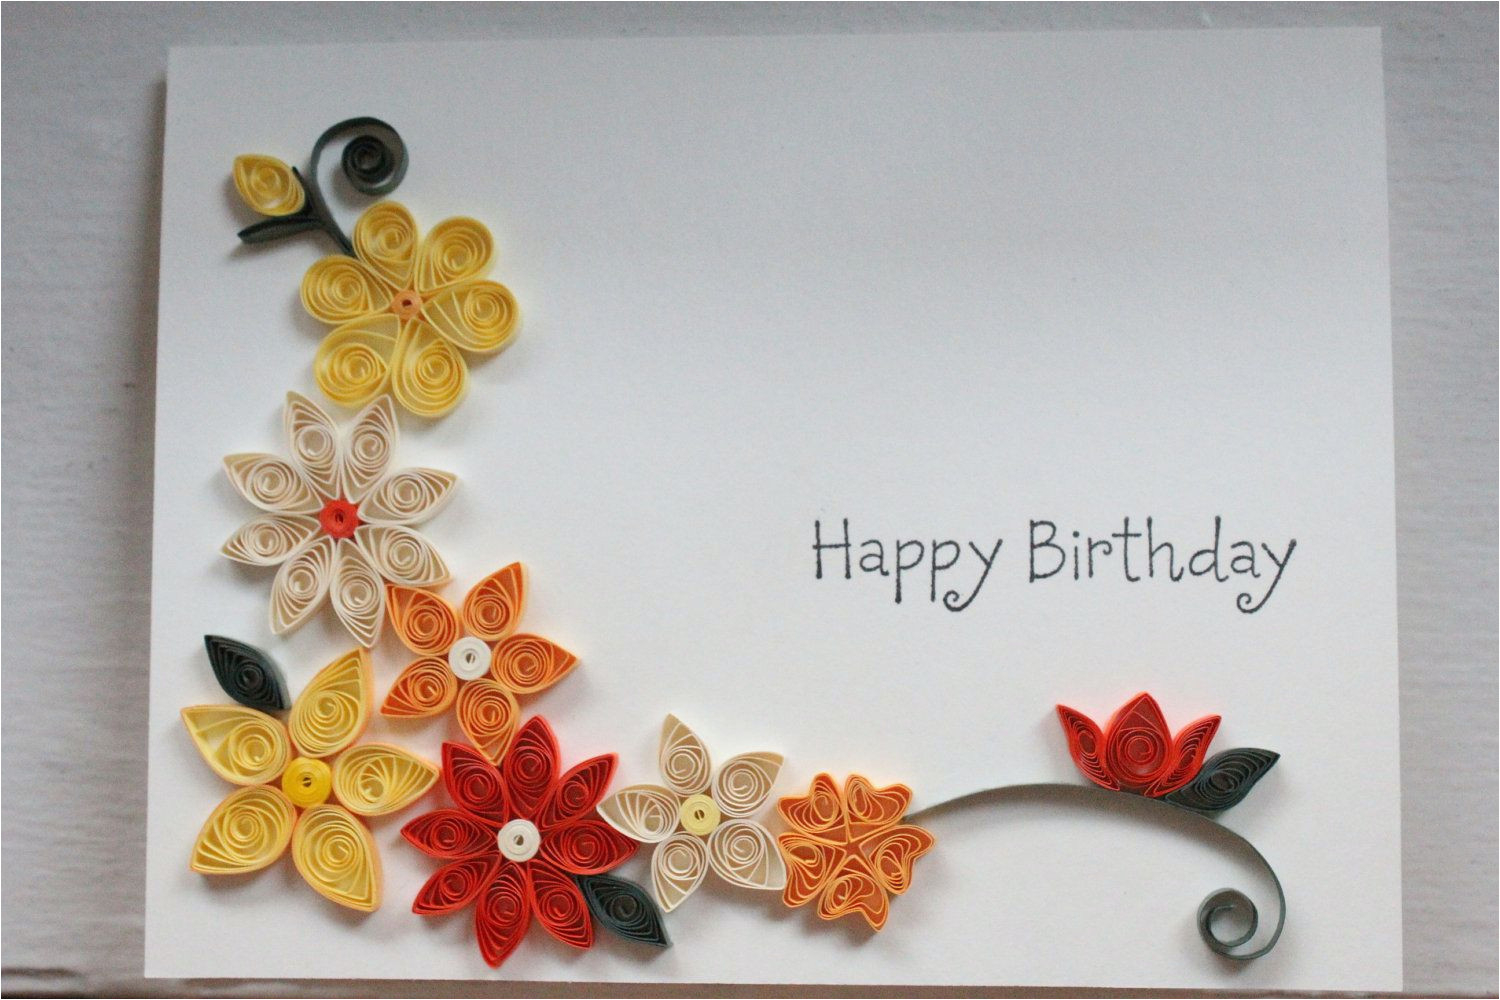 Birthday Card Design Ideas Diy Birthday Card Design Ideas Handcrafted Birthday Card With Paper